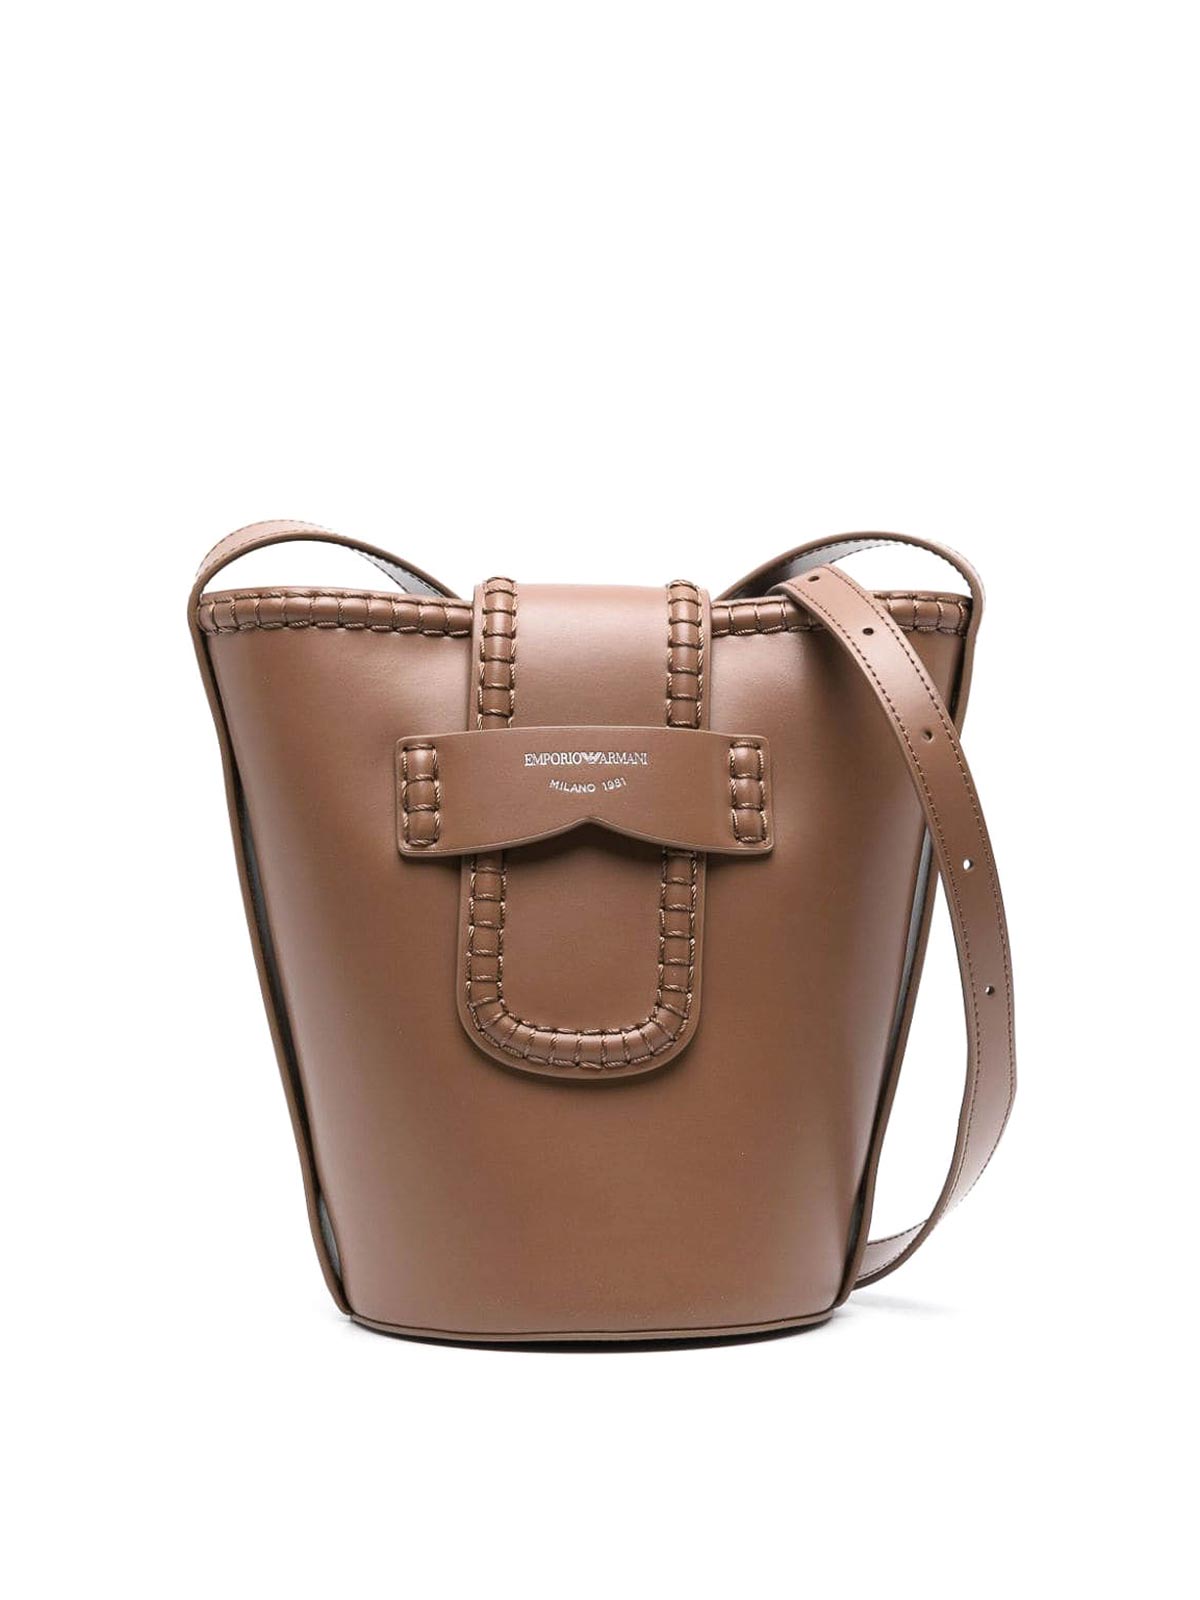 Emporio Armani Leather Bucket Bag In Marrón